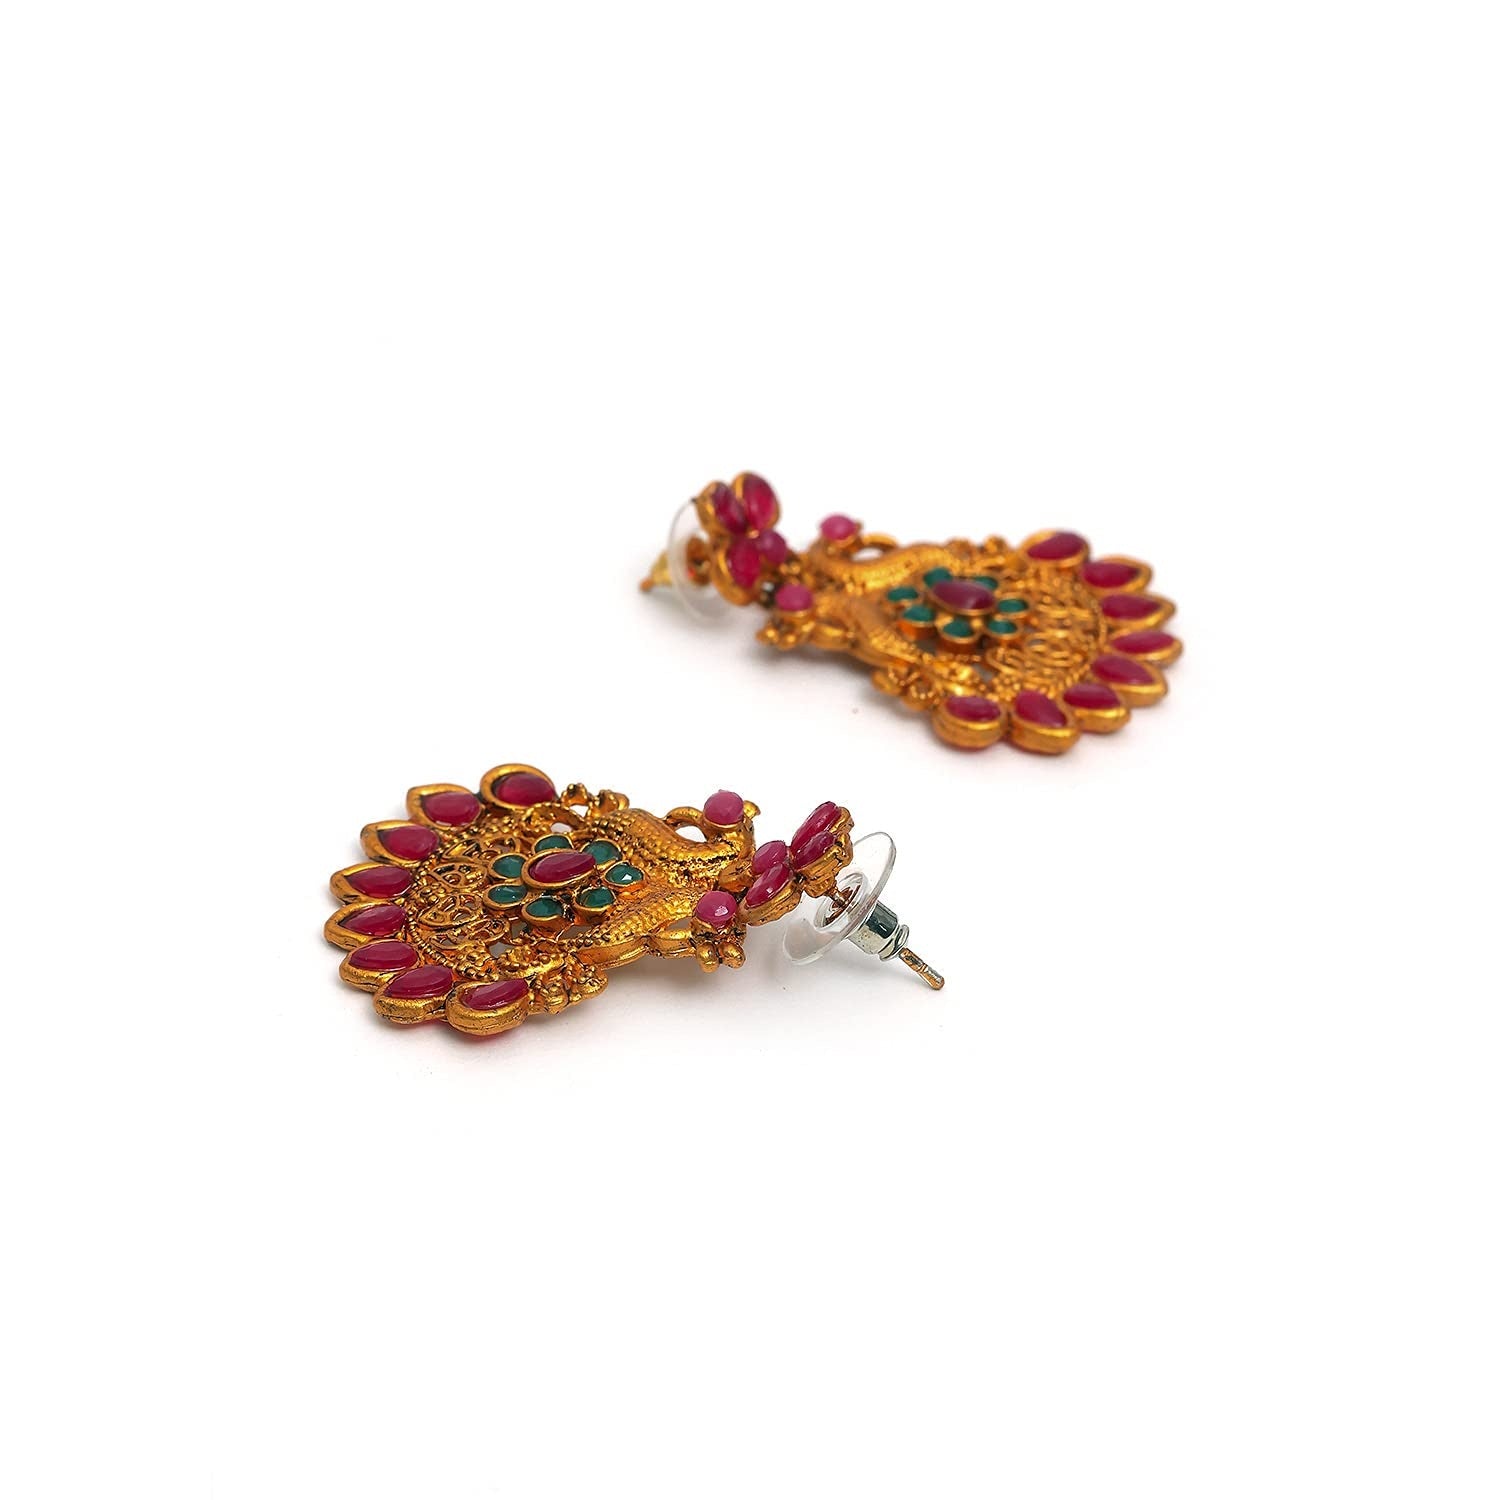 Traditional Multicolor Kundan Necklace set